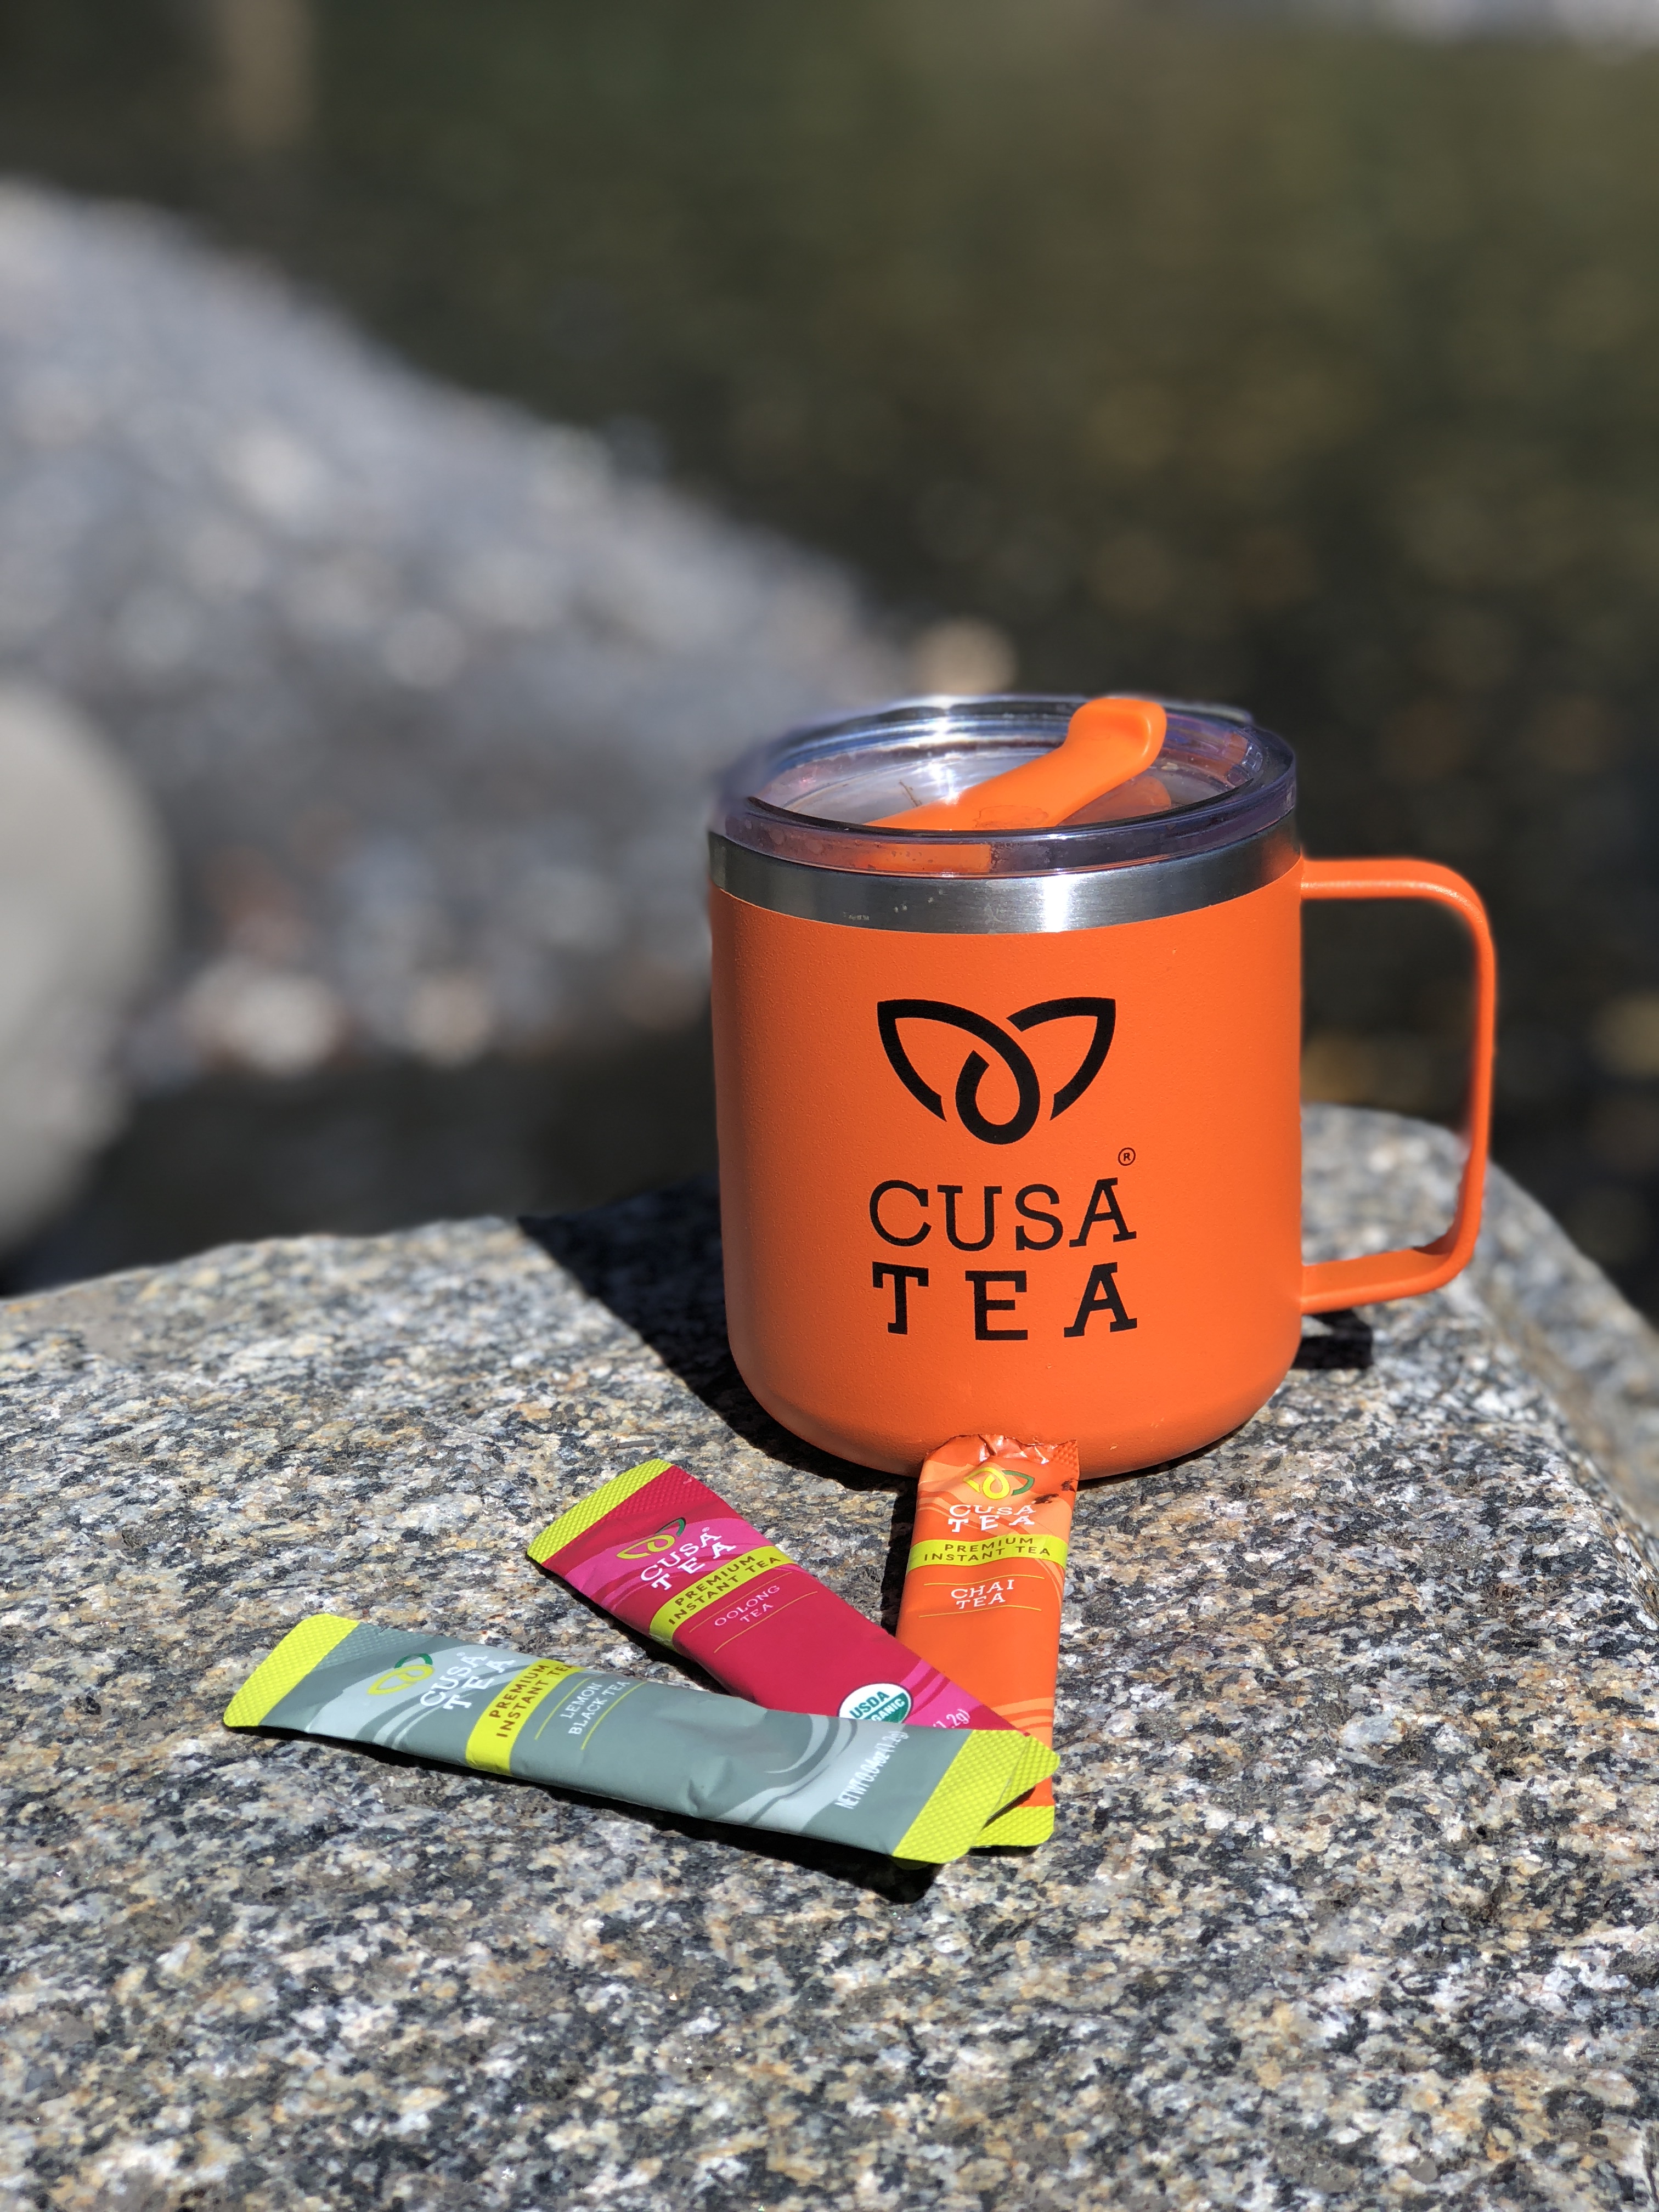 Cusa Tea: Premium Instant Tea for Adventure